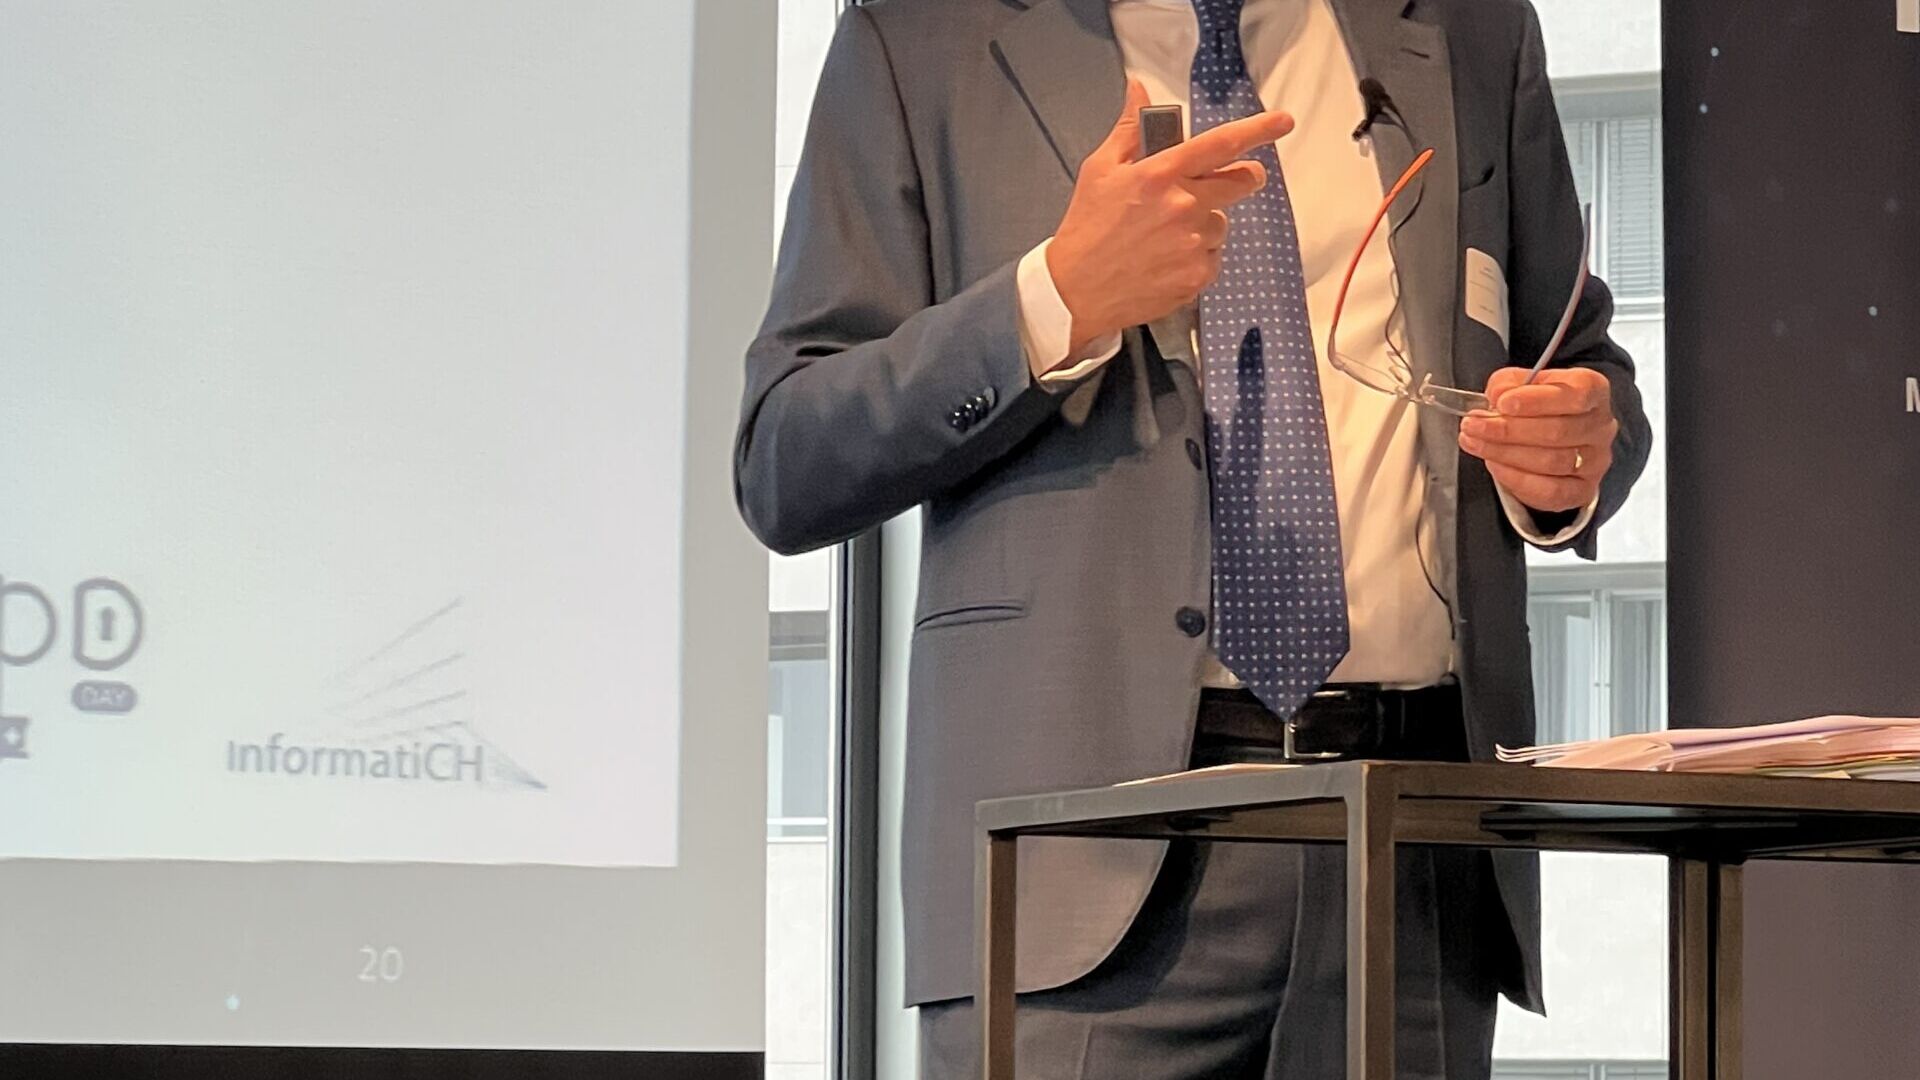 Dati personali: Marco Compagnino, avvocato, è stato uno dei relatori all’edizione 2023 dello “LPD Day” di Lugano il 24 marzo 2023